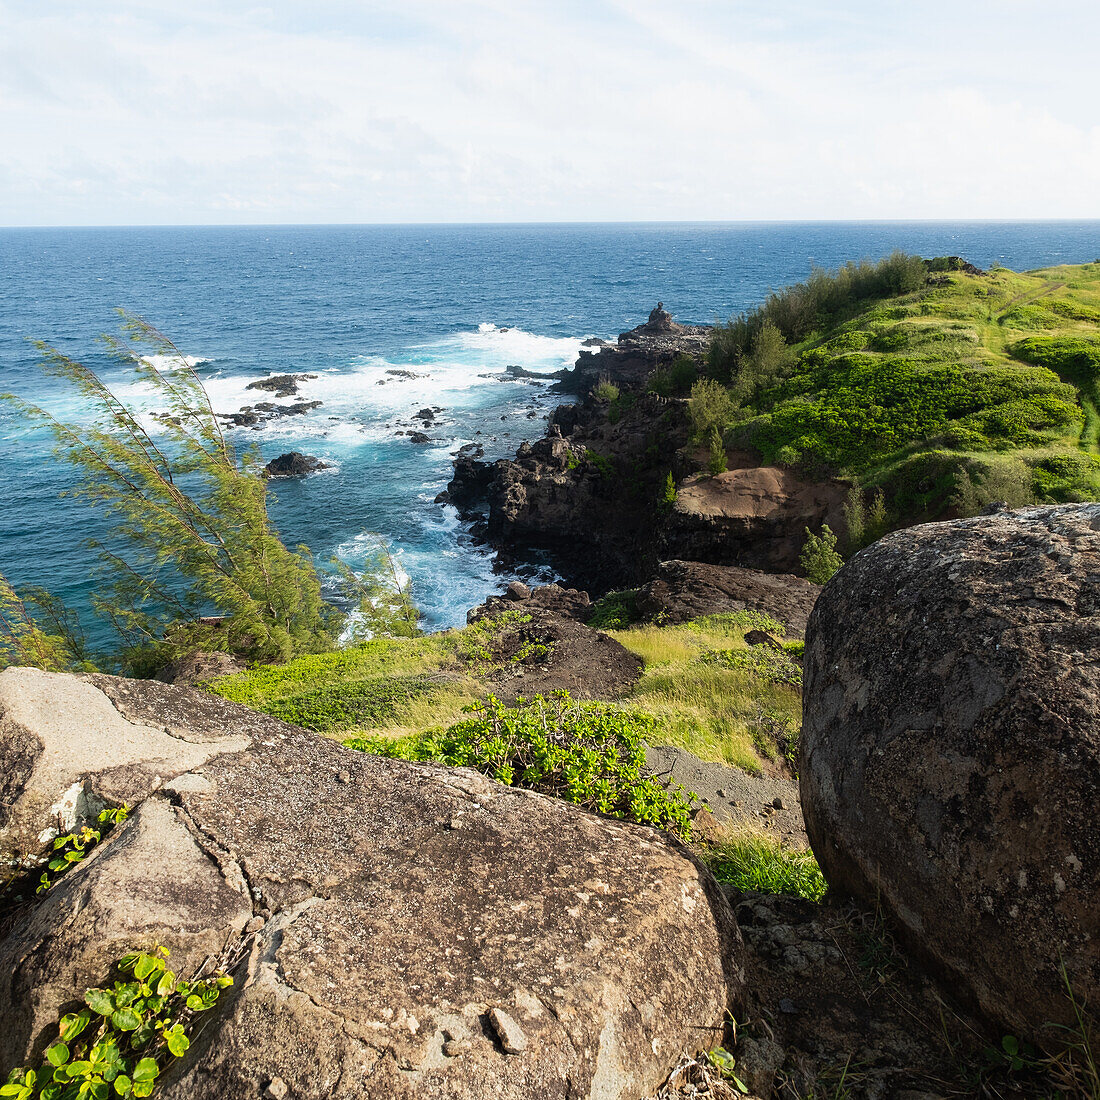 United States, Hawaii, Maui, Sea coast in West Maui Natural Area Reserve